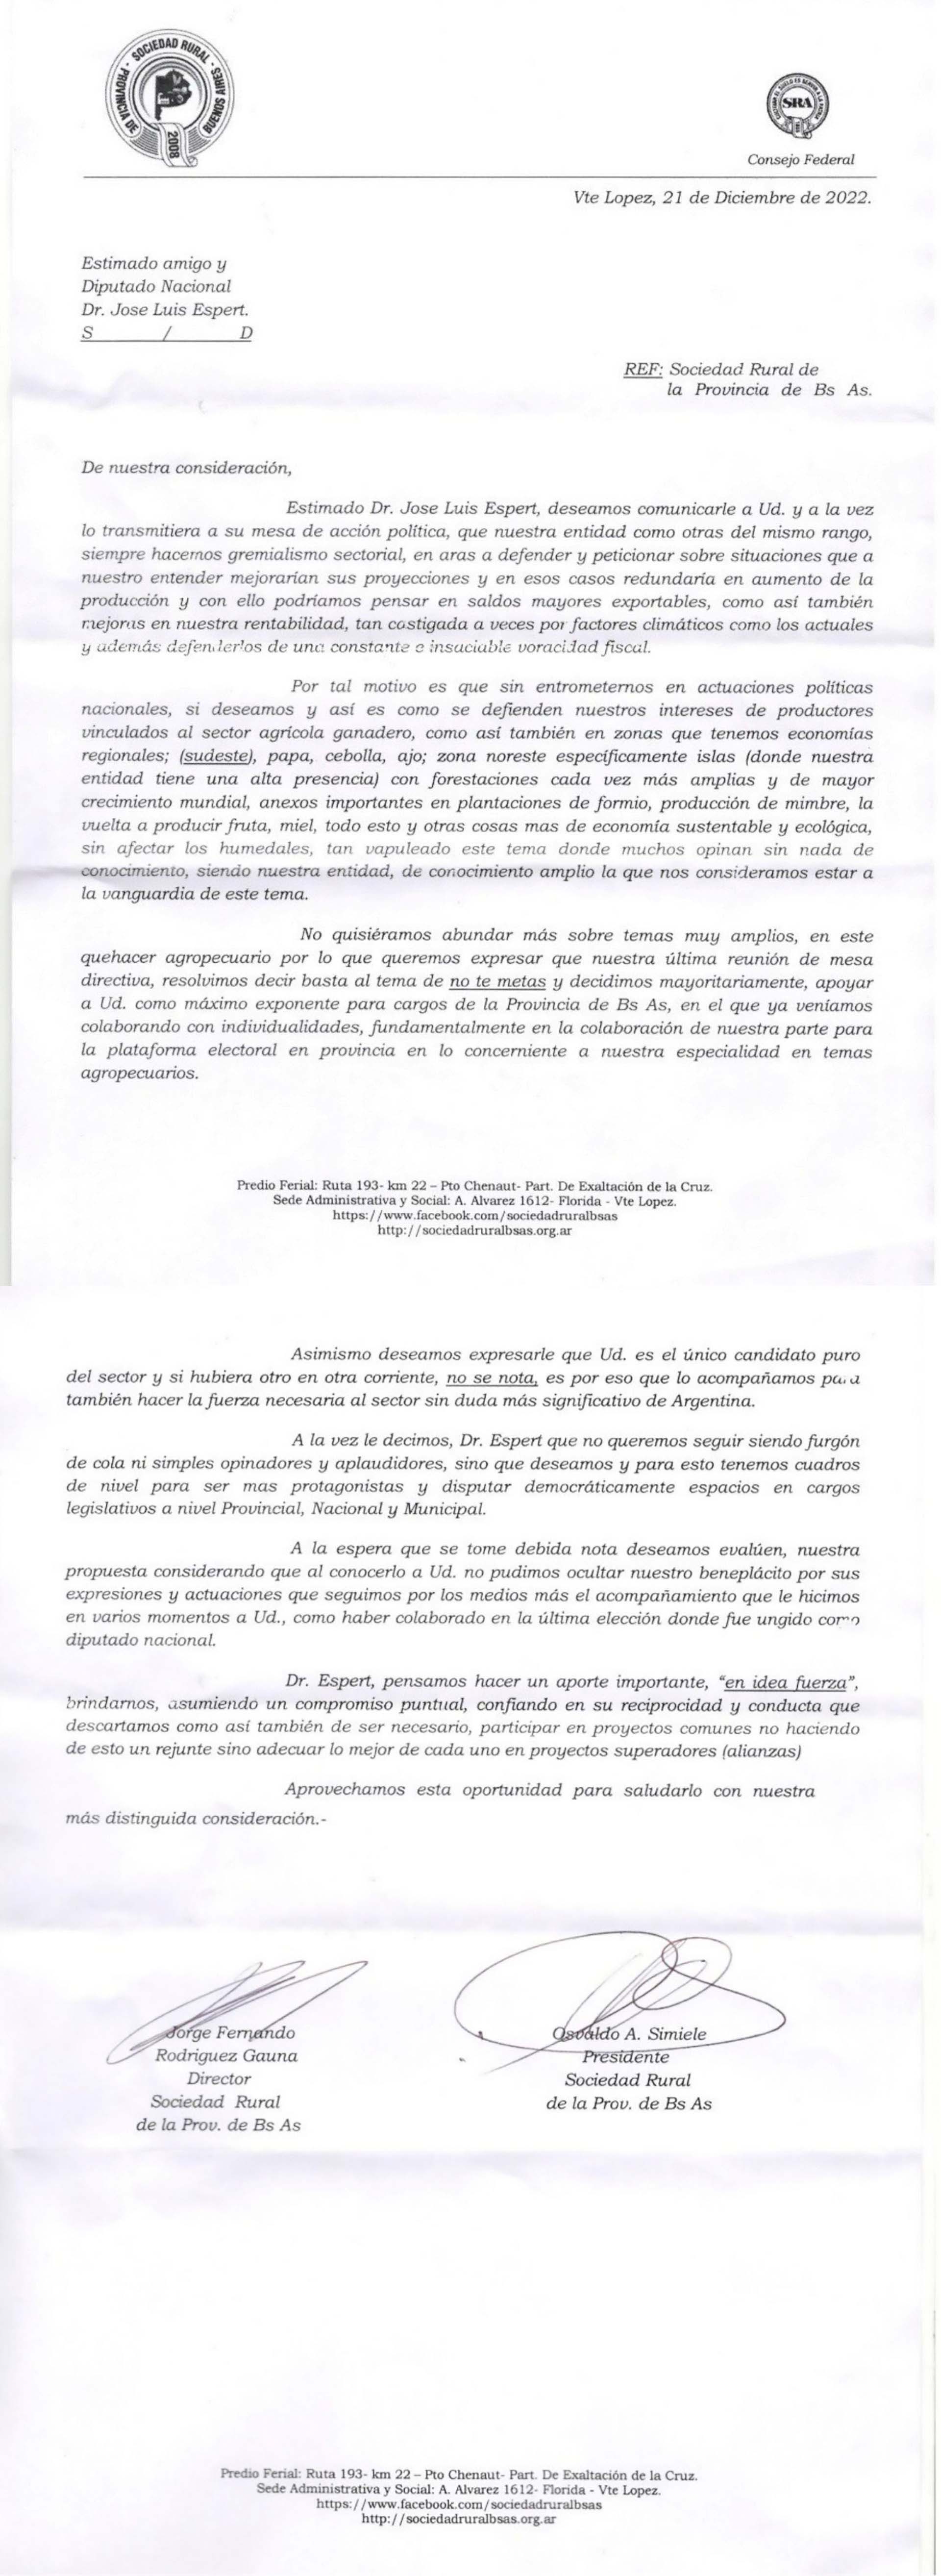 La carta de la Sociedad Rural de la provincia de Buenos Aires